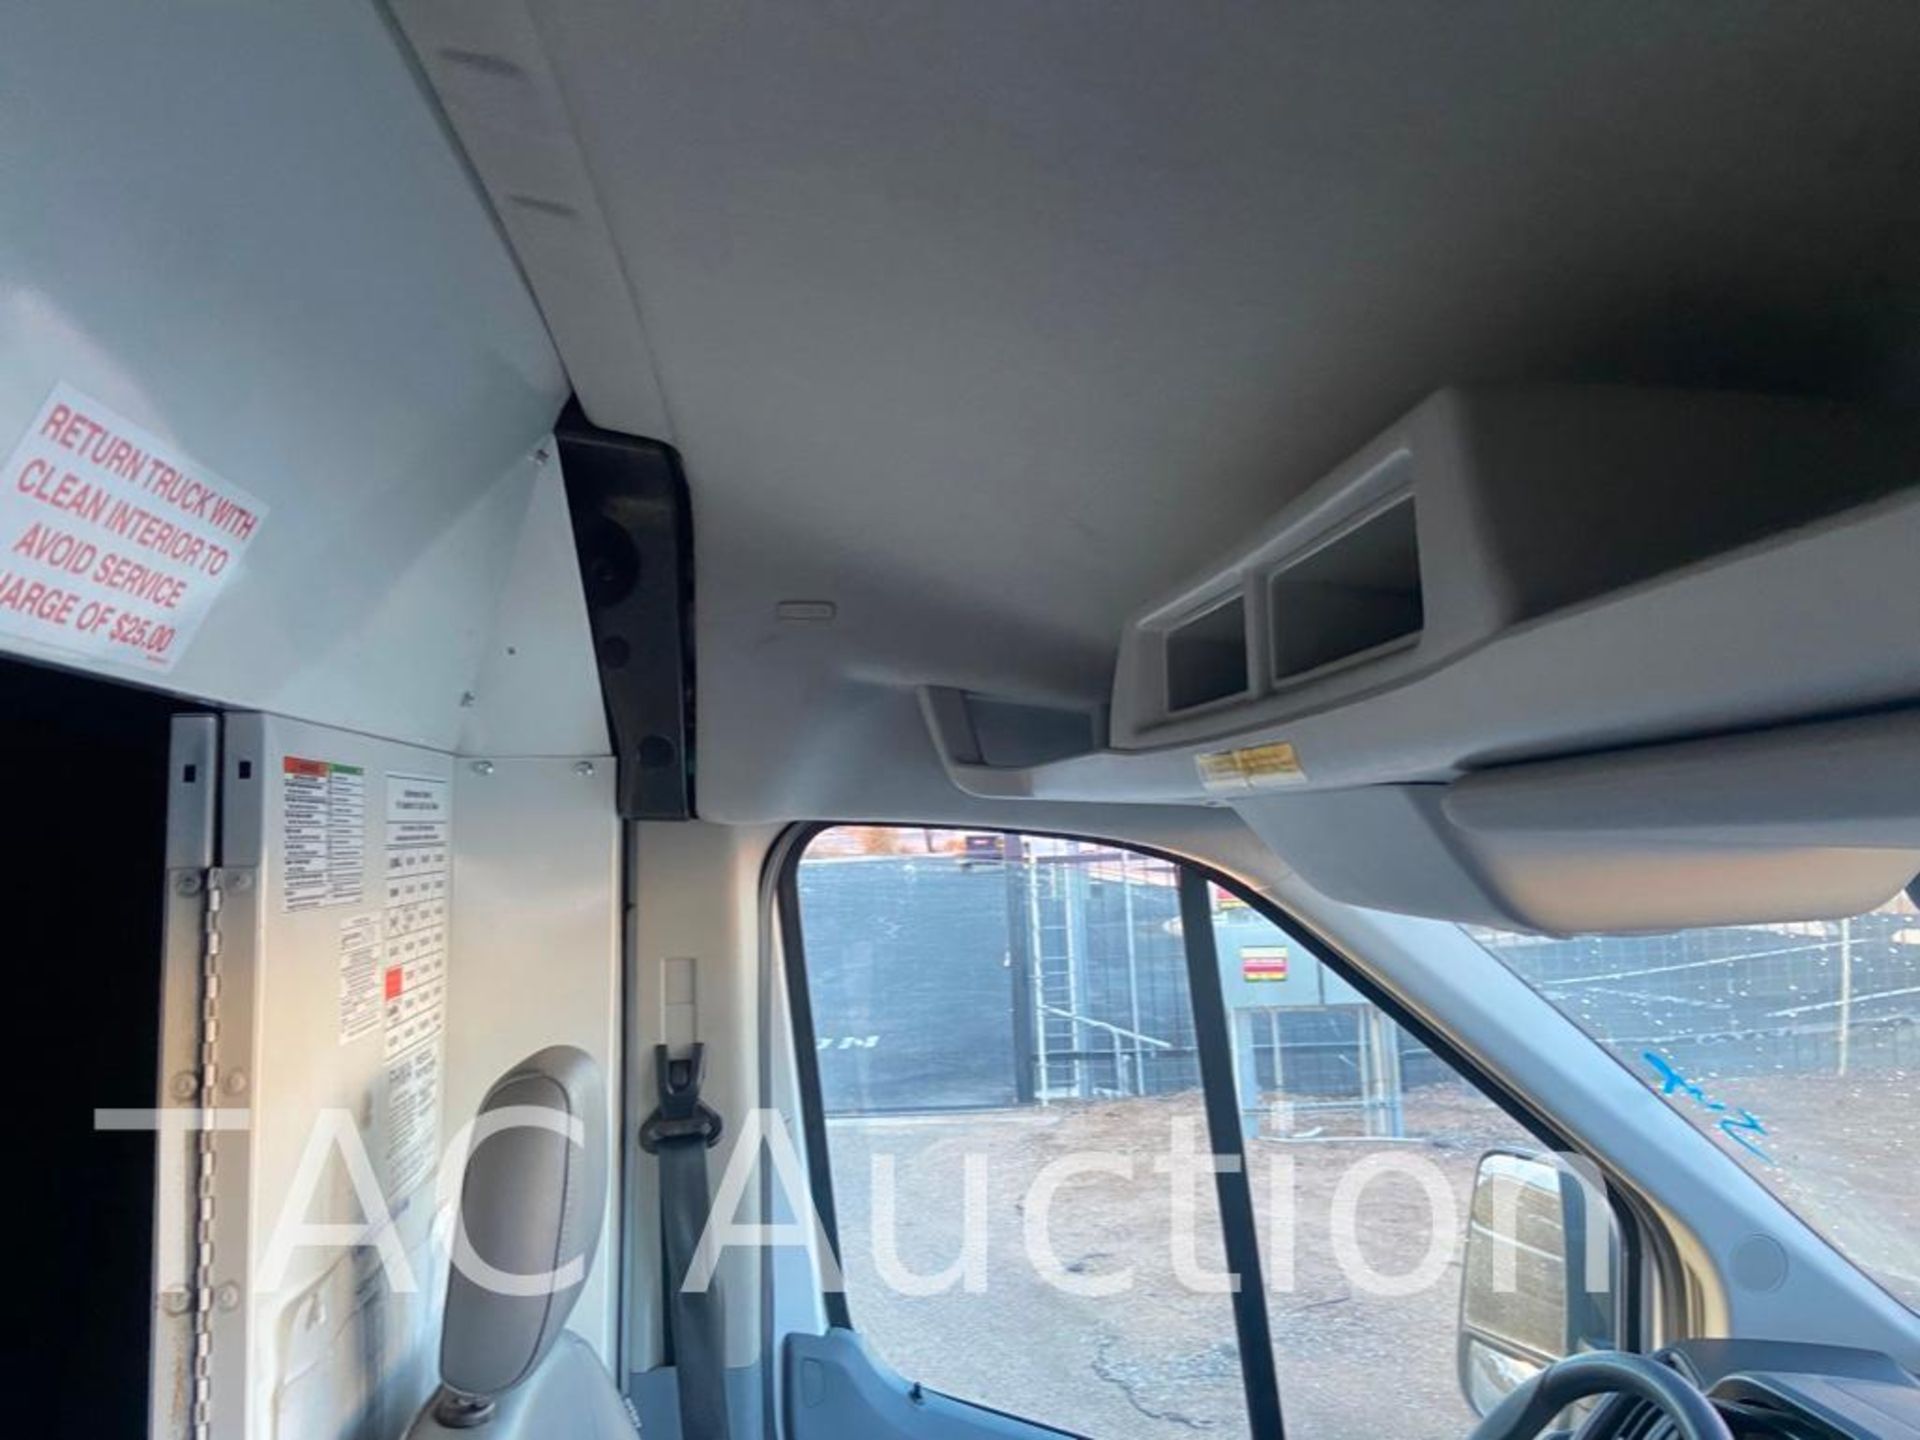 2018 Ford Transit 150 Cargo Van - Image 39 of 82